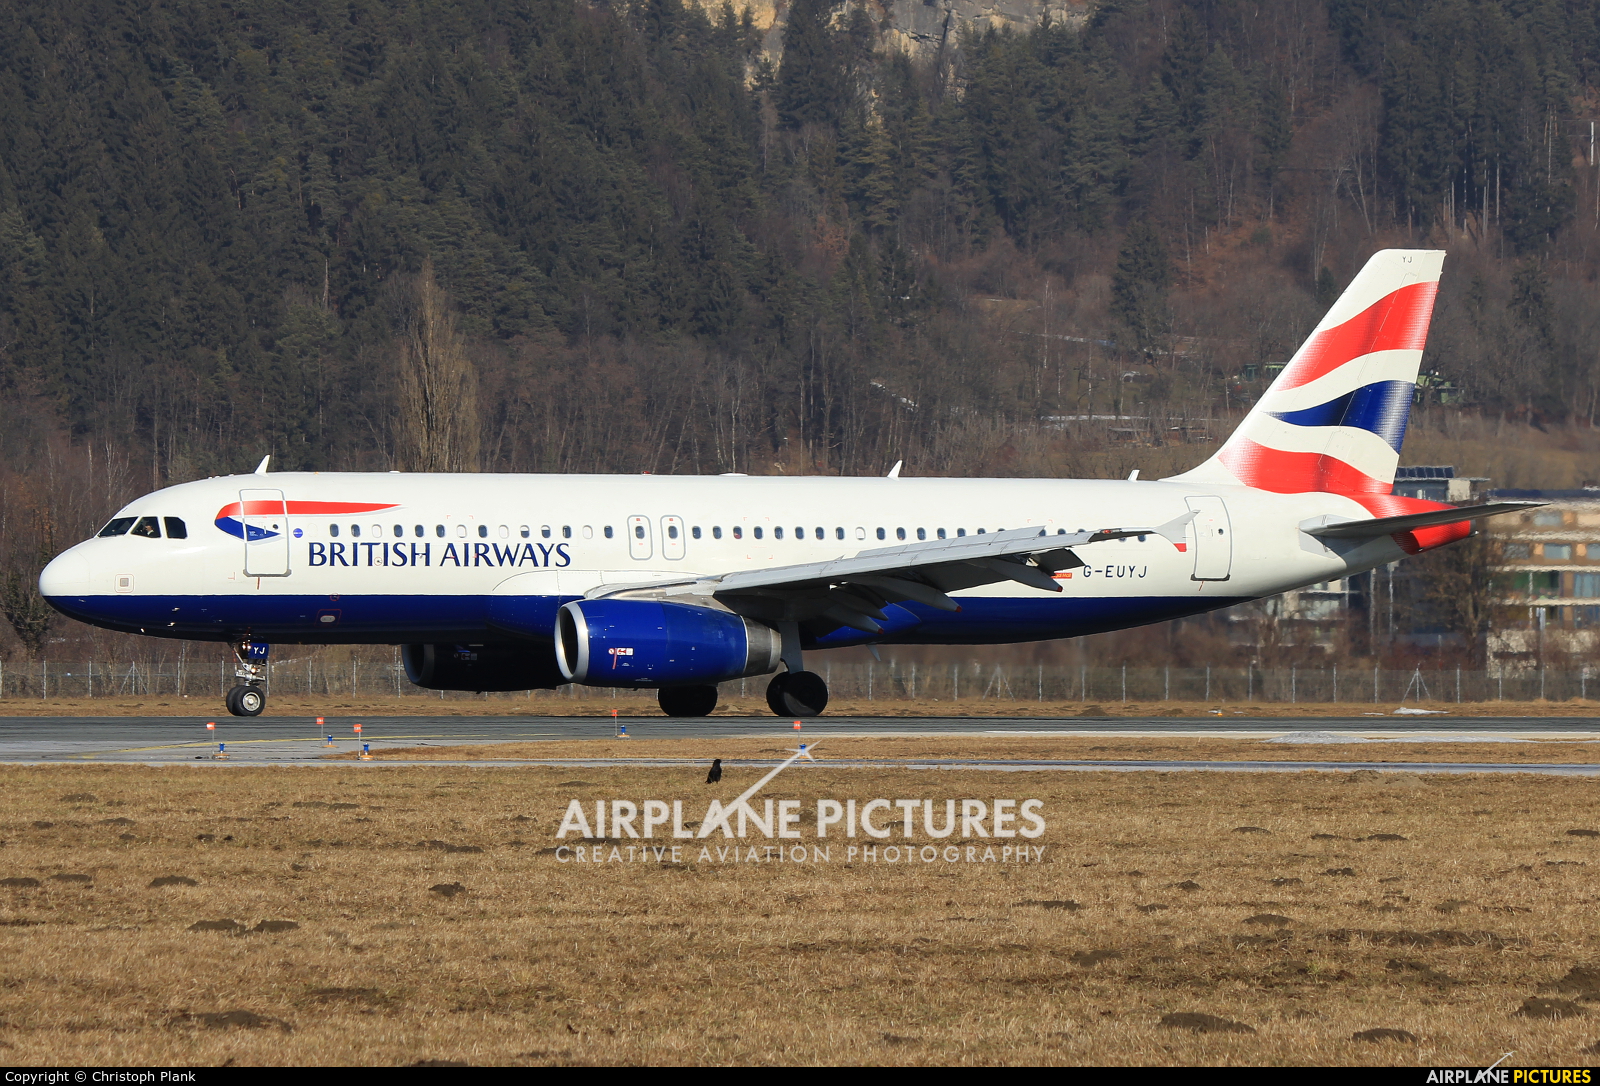 British Airways G-EUYJ aircraft at Innsbruck